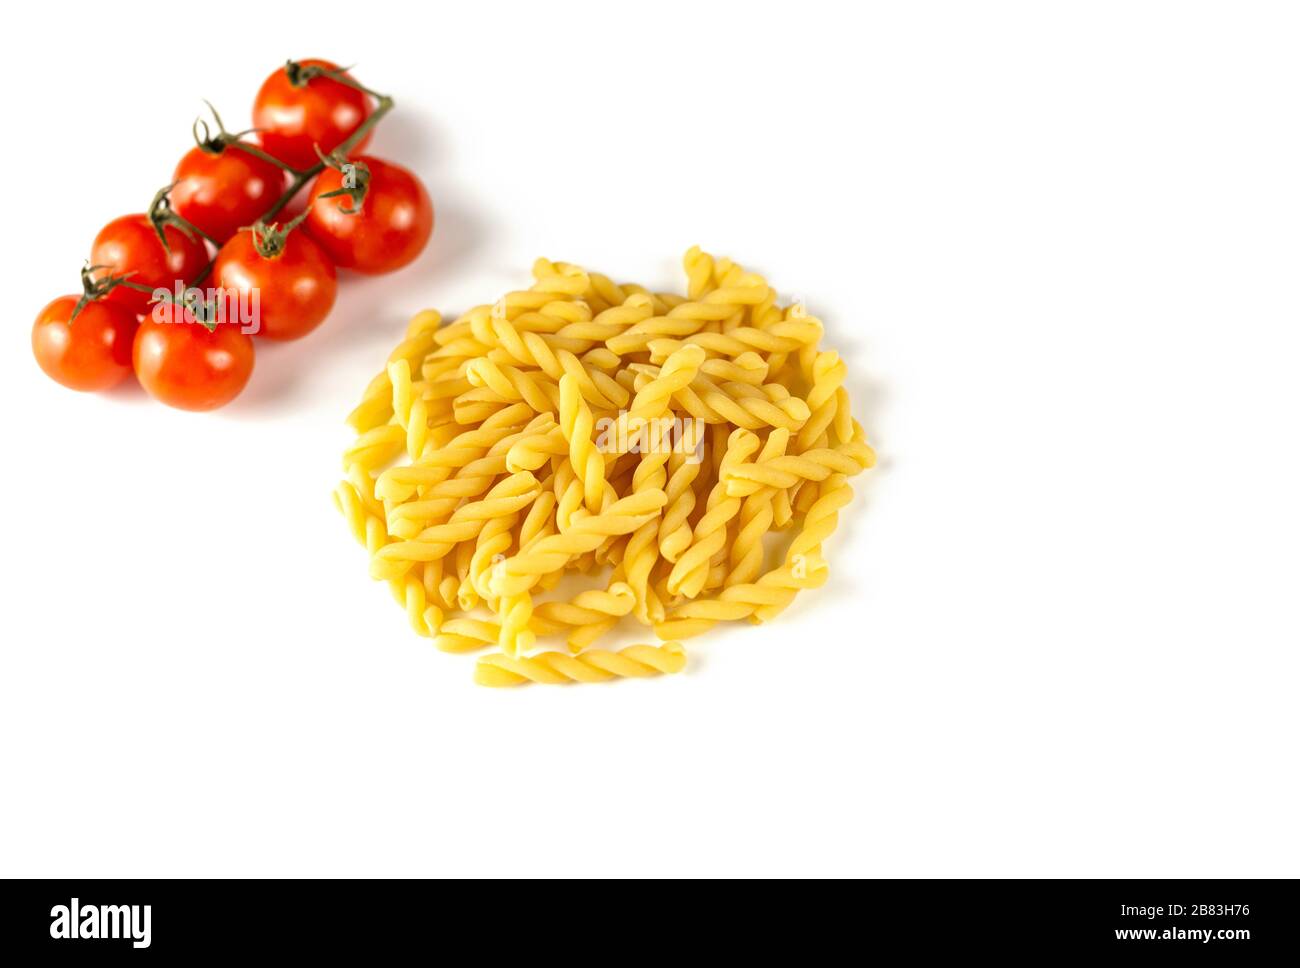 Pasta italiana cruda con tomati di strega isolati su sfondo bianco. Concetto di cibo e bevande. Vista dall'alto. Spazio di copia Foto Stock